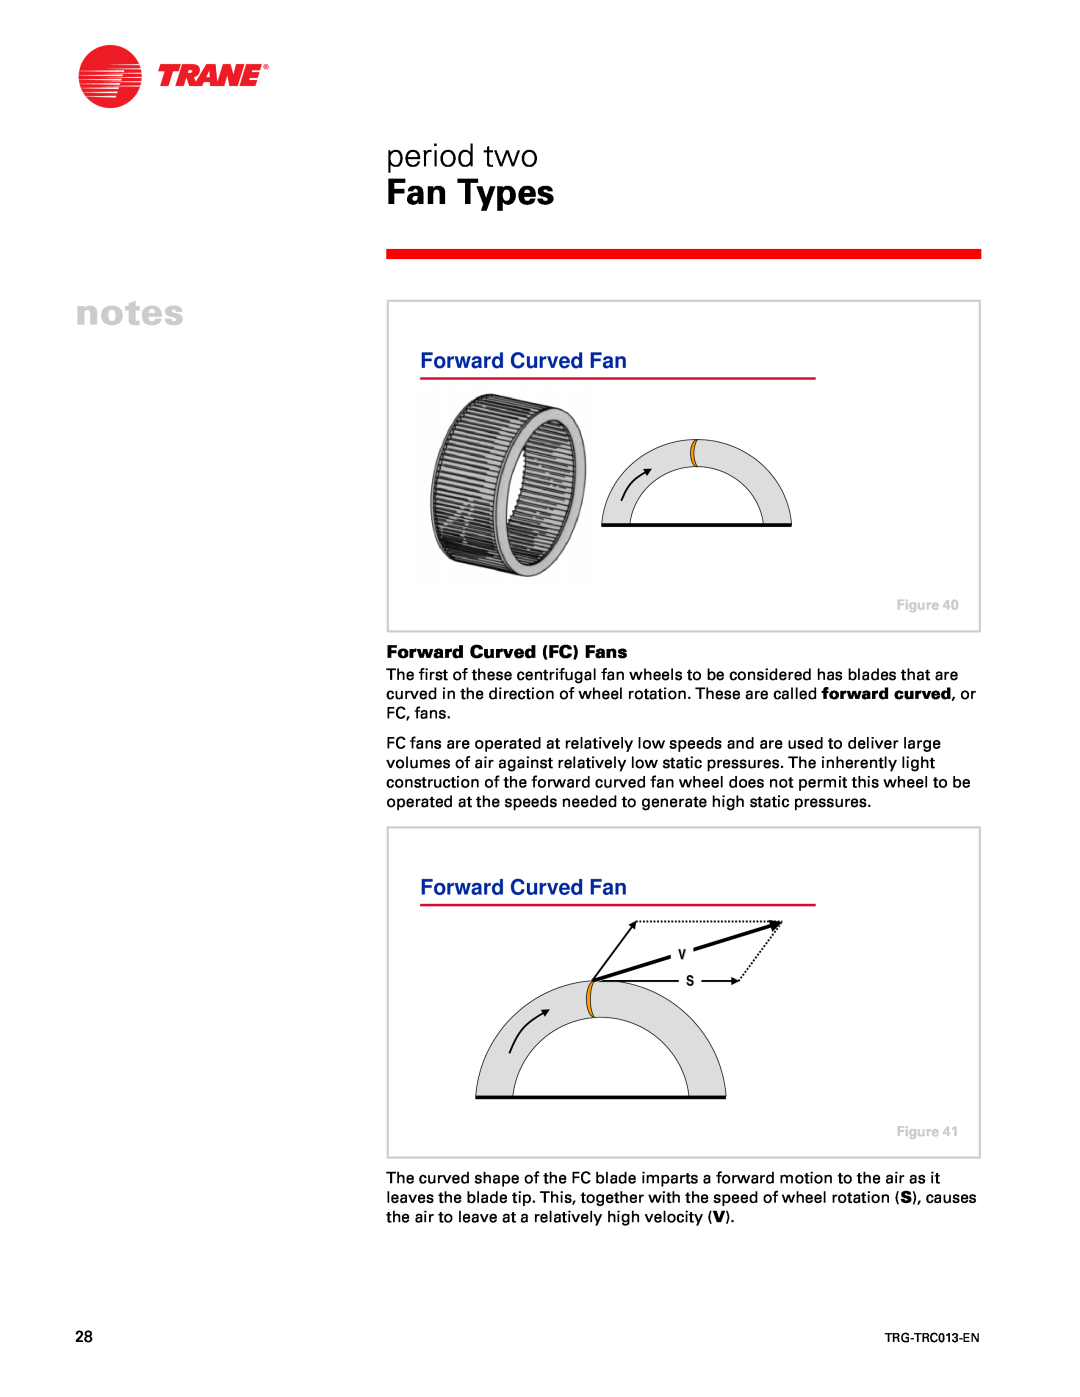 Trane TRG-TRC013-EN manual Forward Curved Fan, cwt ux r2 - PM2 up” PM up” r-” -t, cwt r, x/2 rp, g GC, g GD 